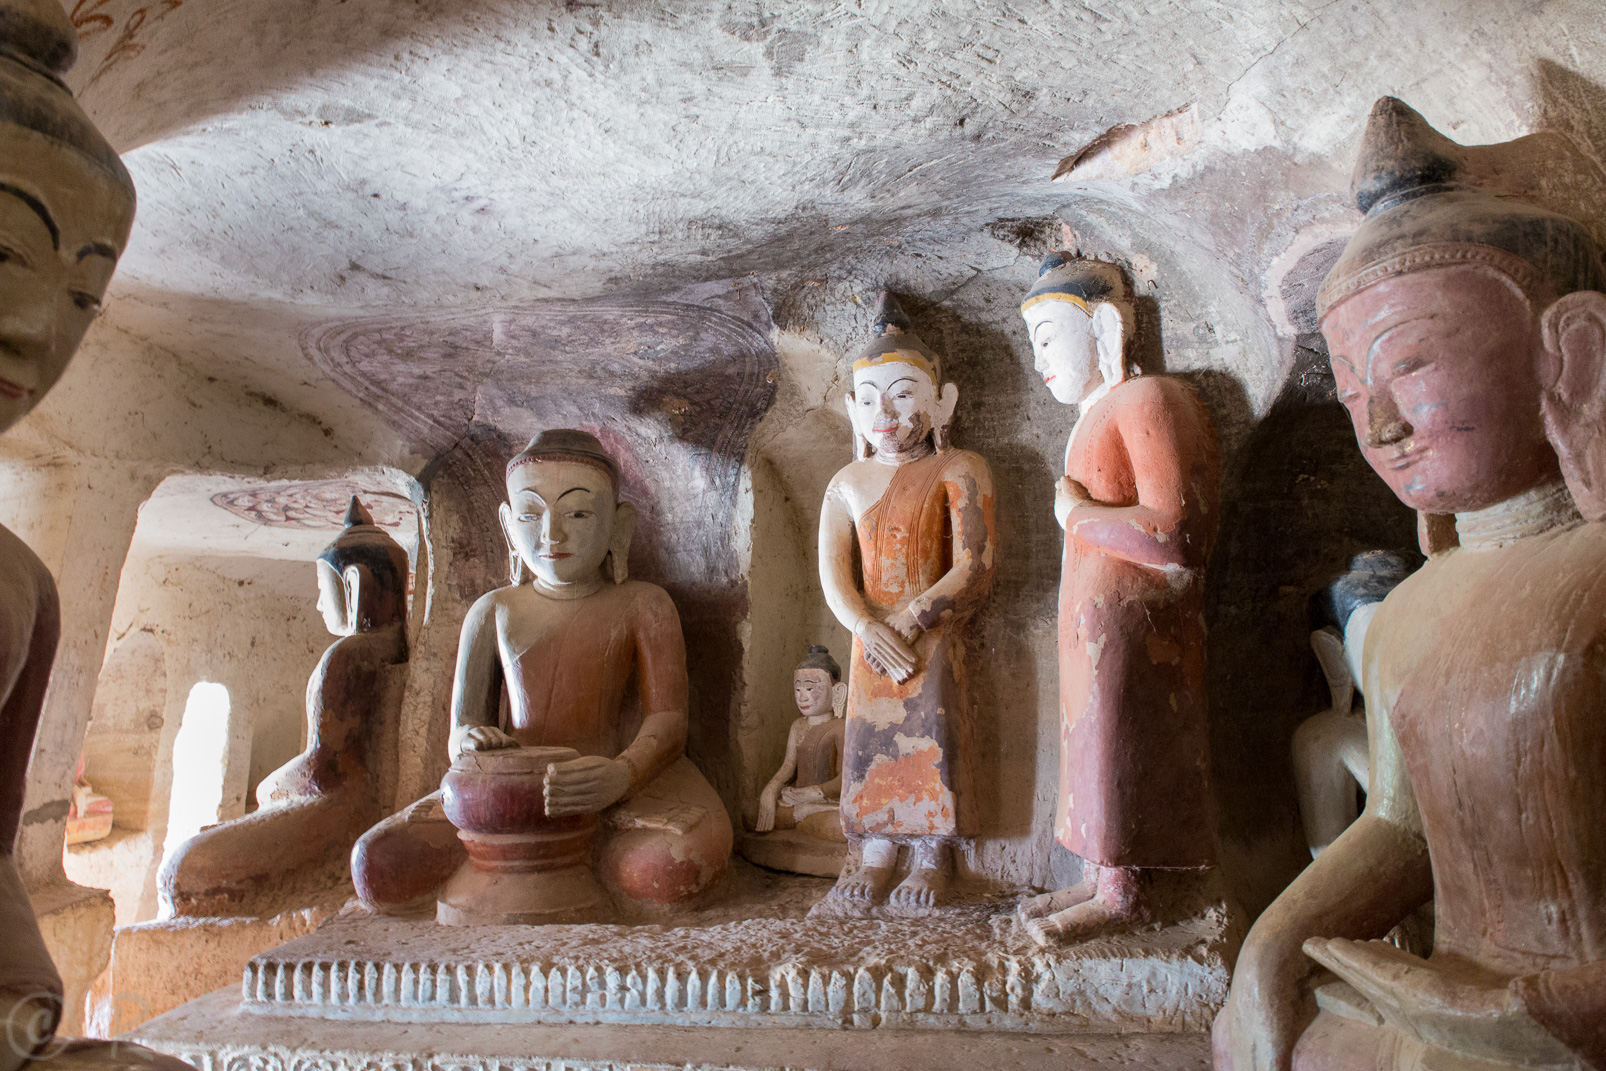 Les grottes sculptées de Hpowintaung présentent aussi des scènes liées au Bouddhisme.